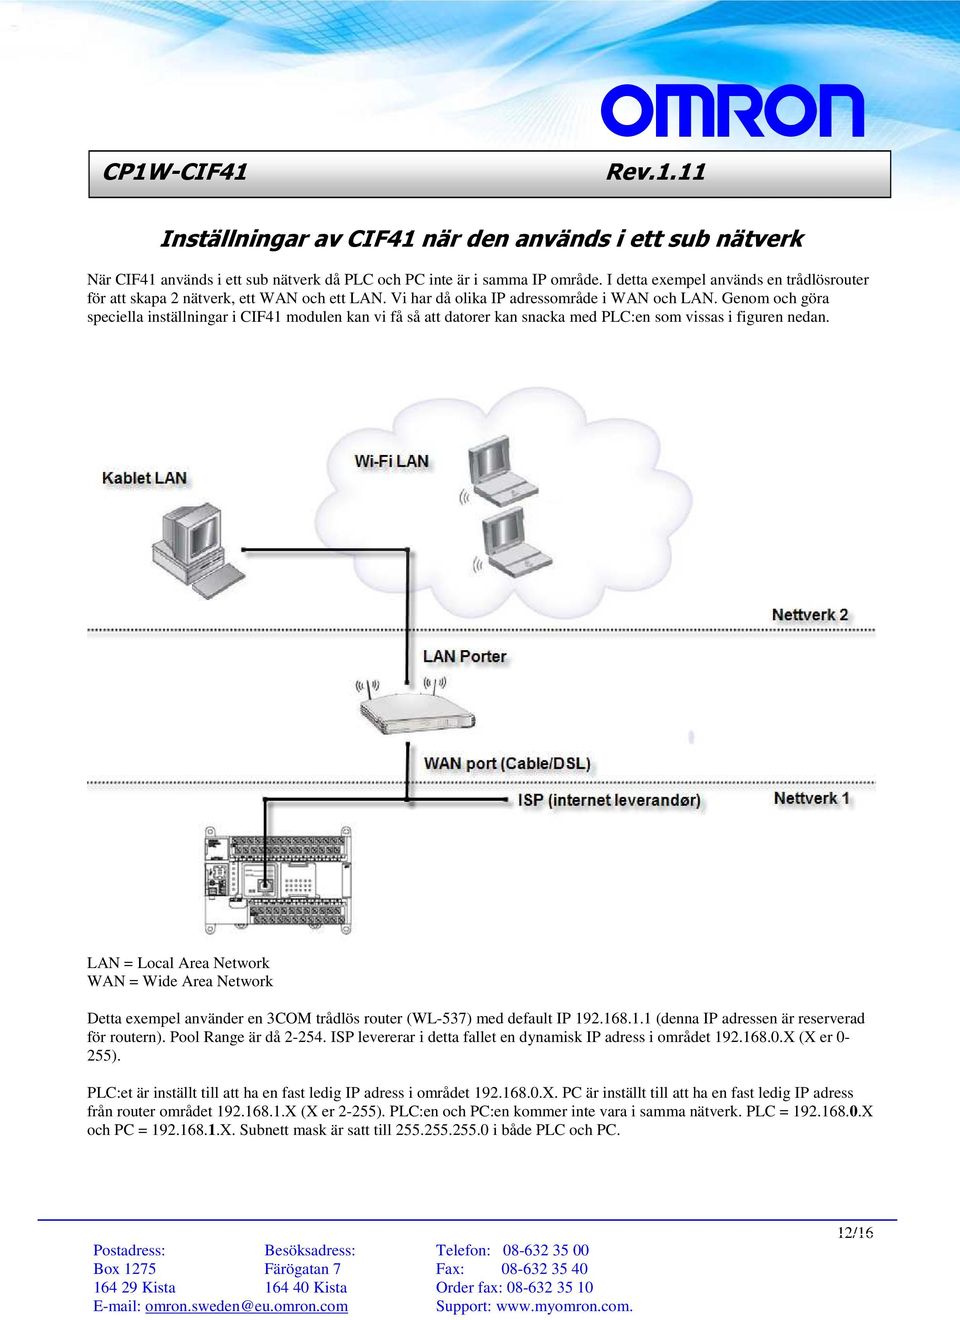 Genom och göra speciella inställningar i CIF41 modulen kan vi få så att datorer kan snacka med PLC:en som vissas i figuren nedan.